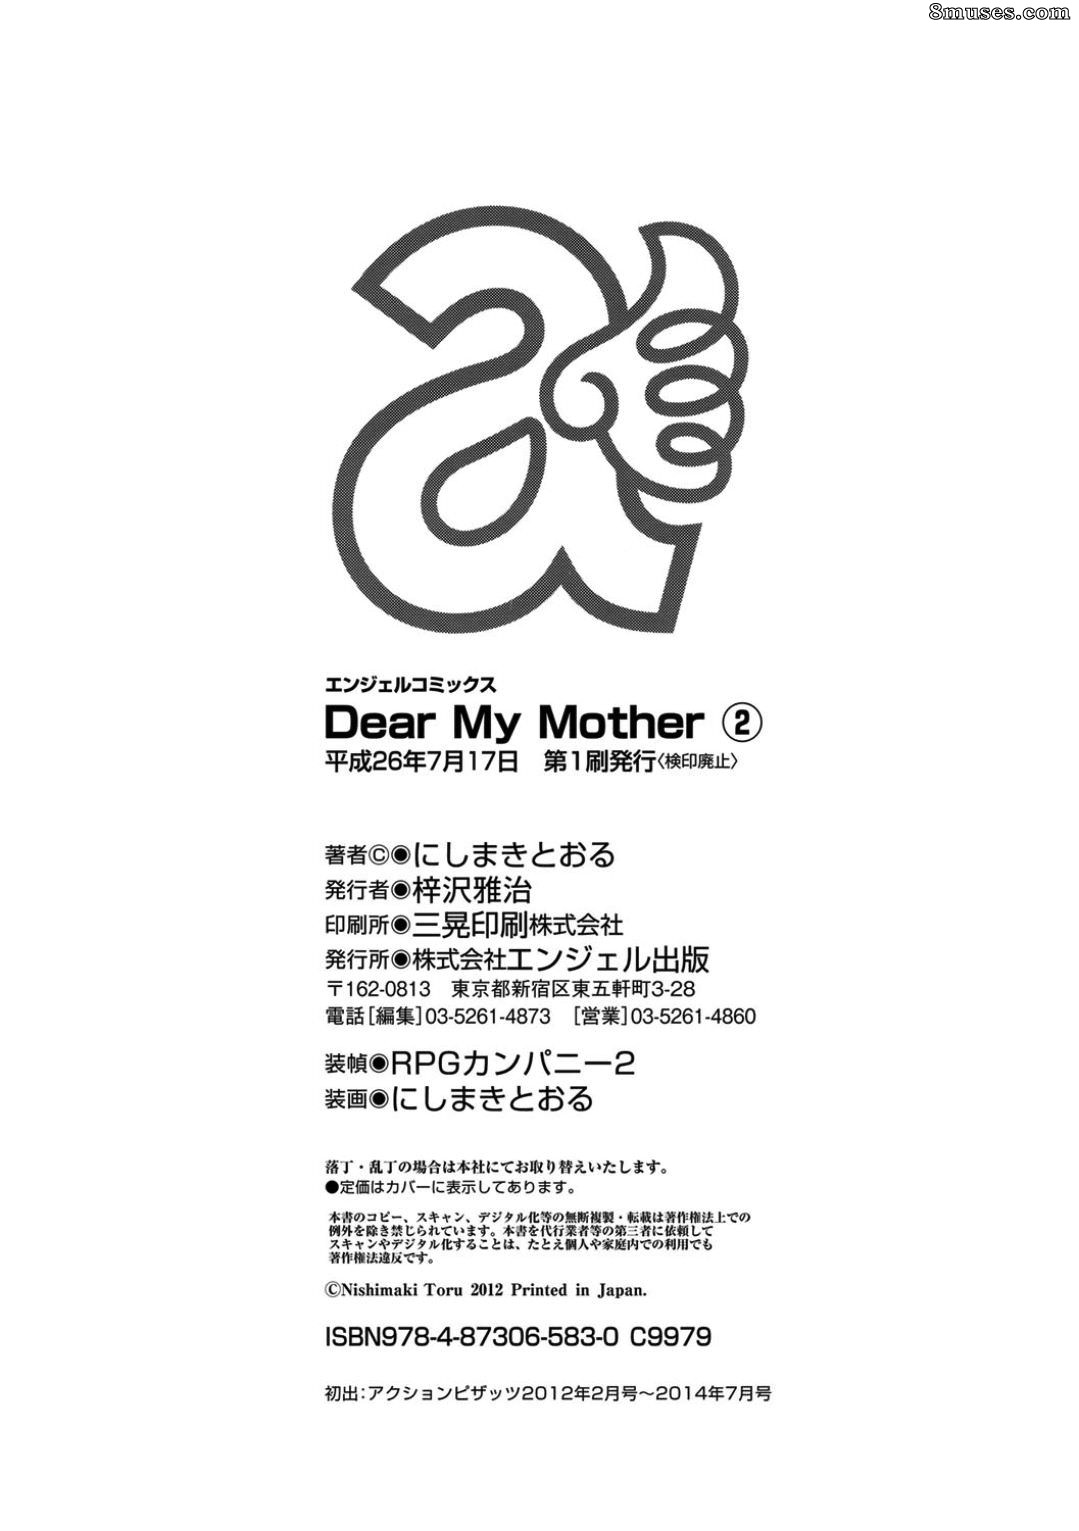 Dear my mother 2